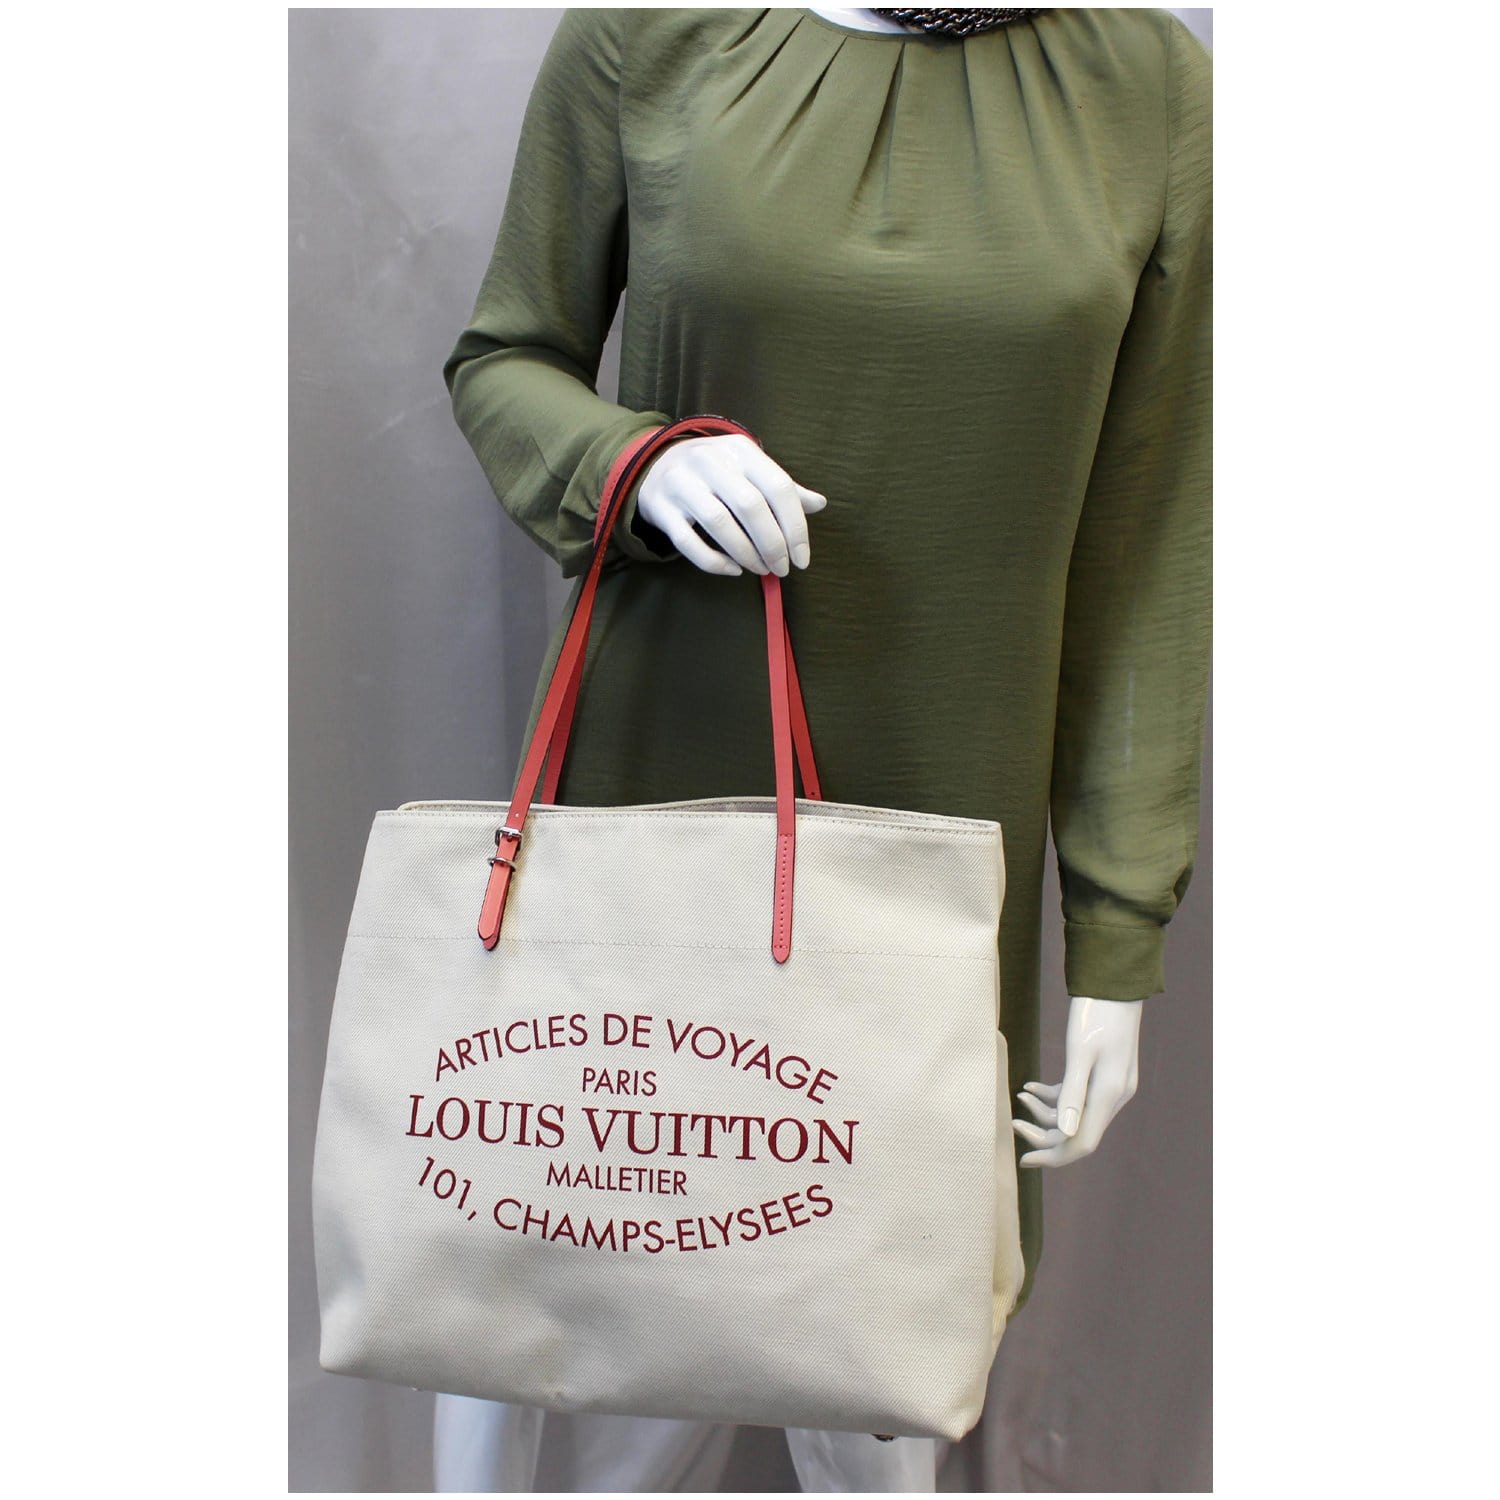 Louis Vuitton - Articles de Voyage Textile Bag